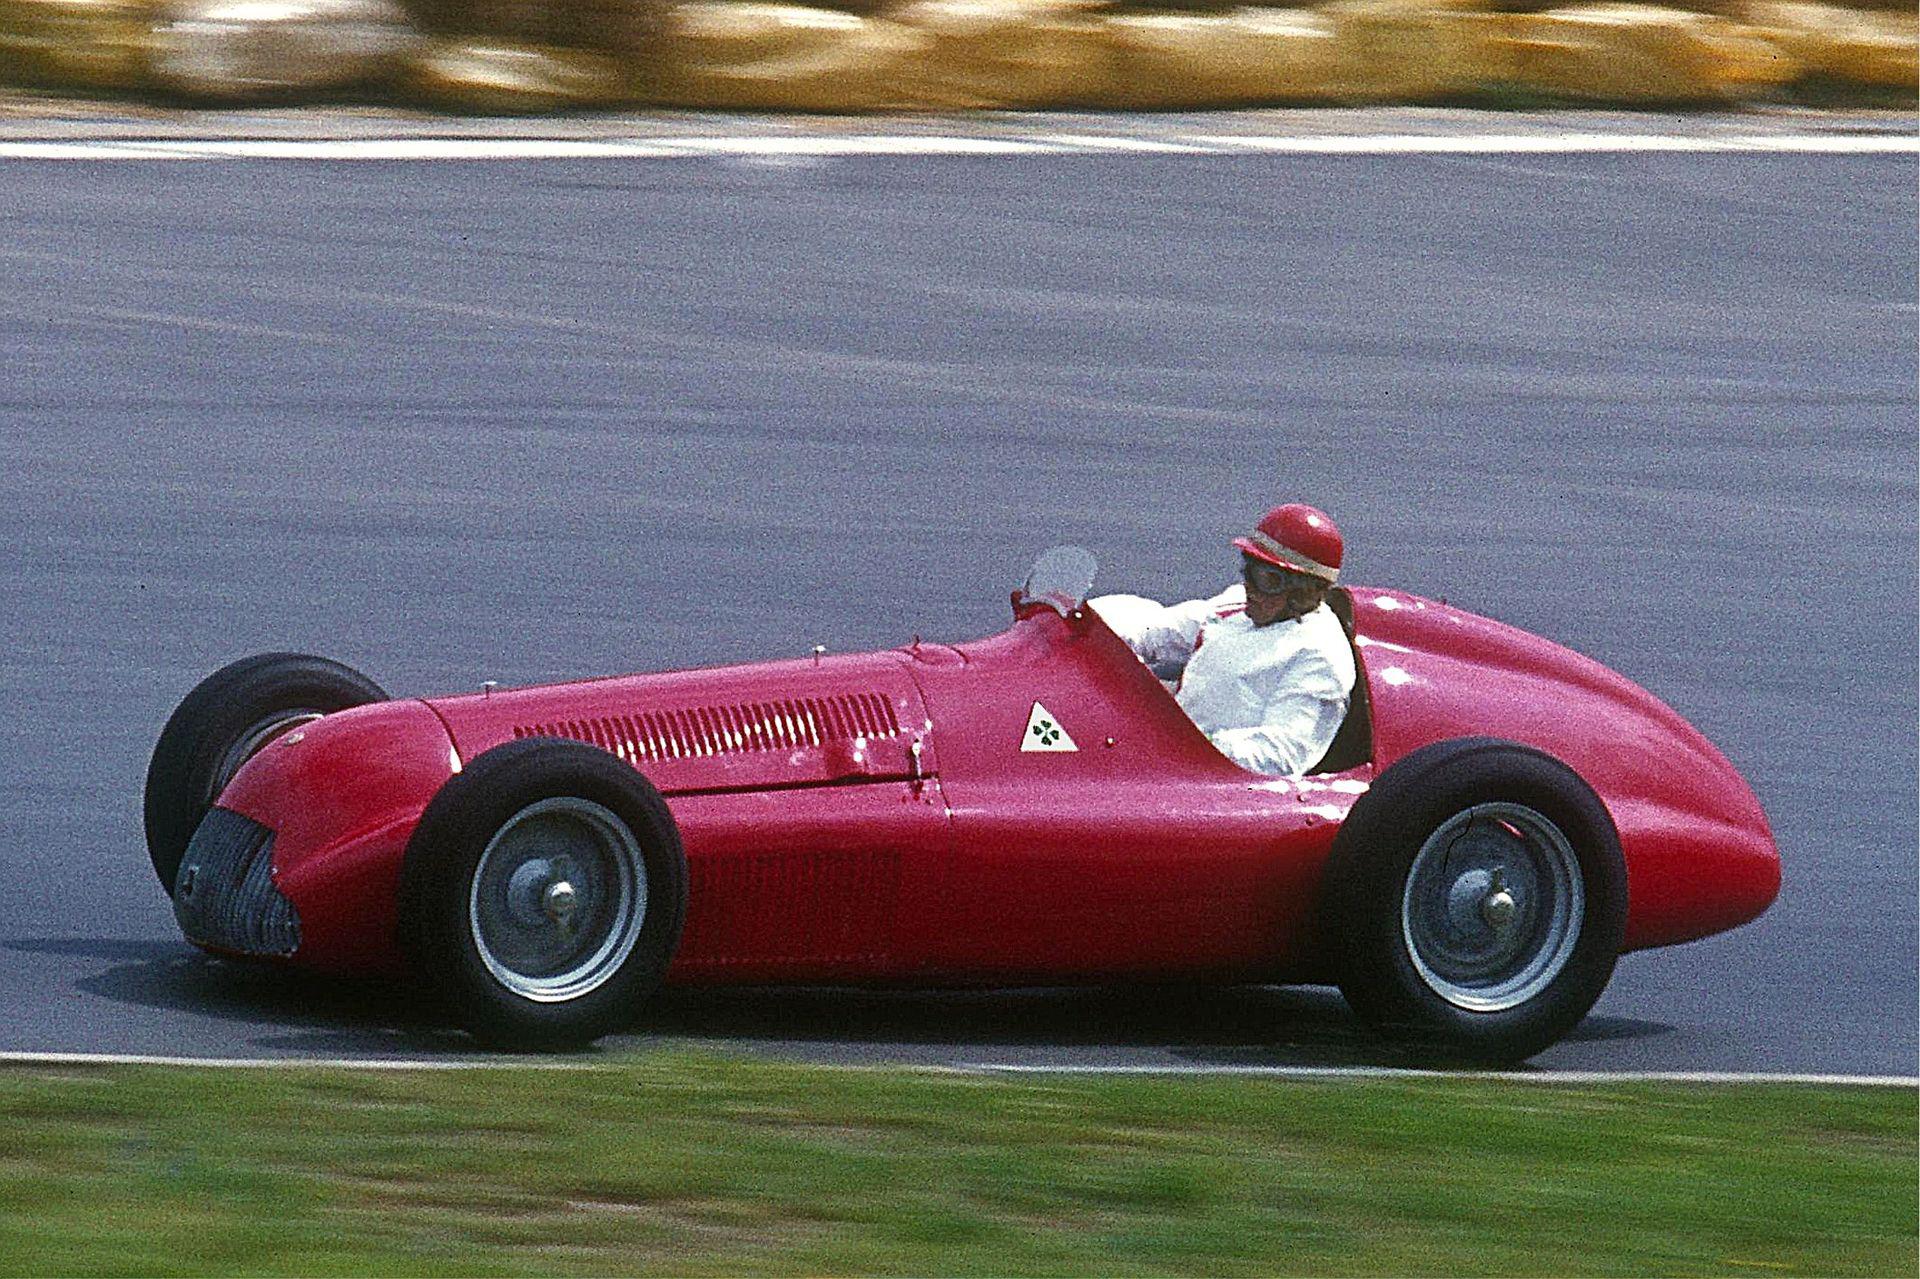 Alfa Romeo 159 (Formula 1) (Foto Wikipedia)